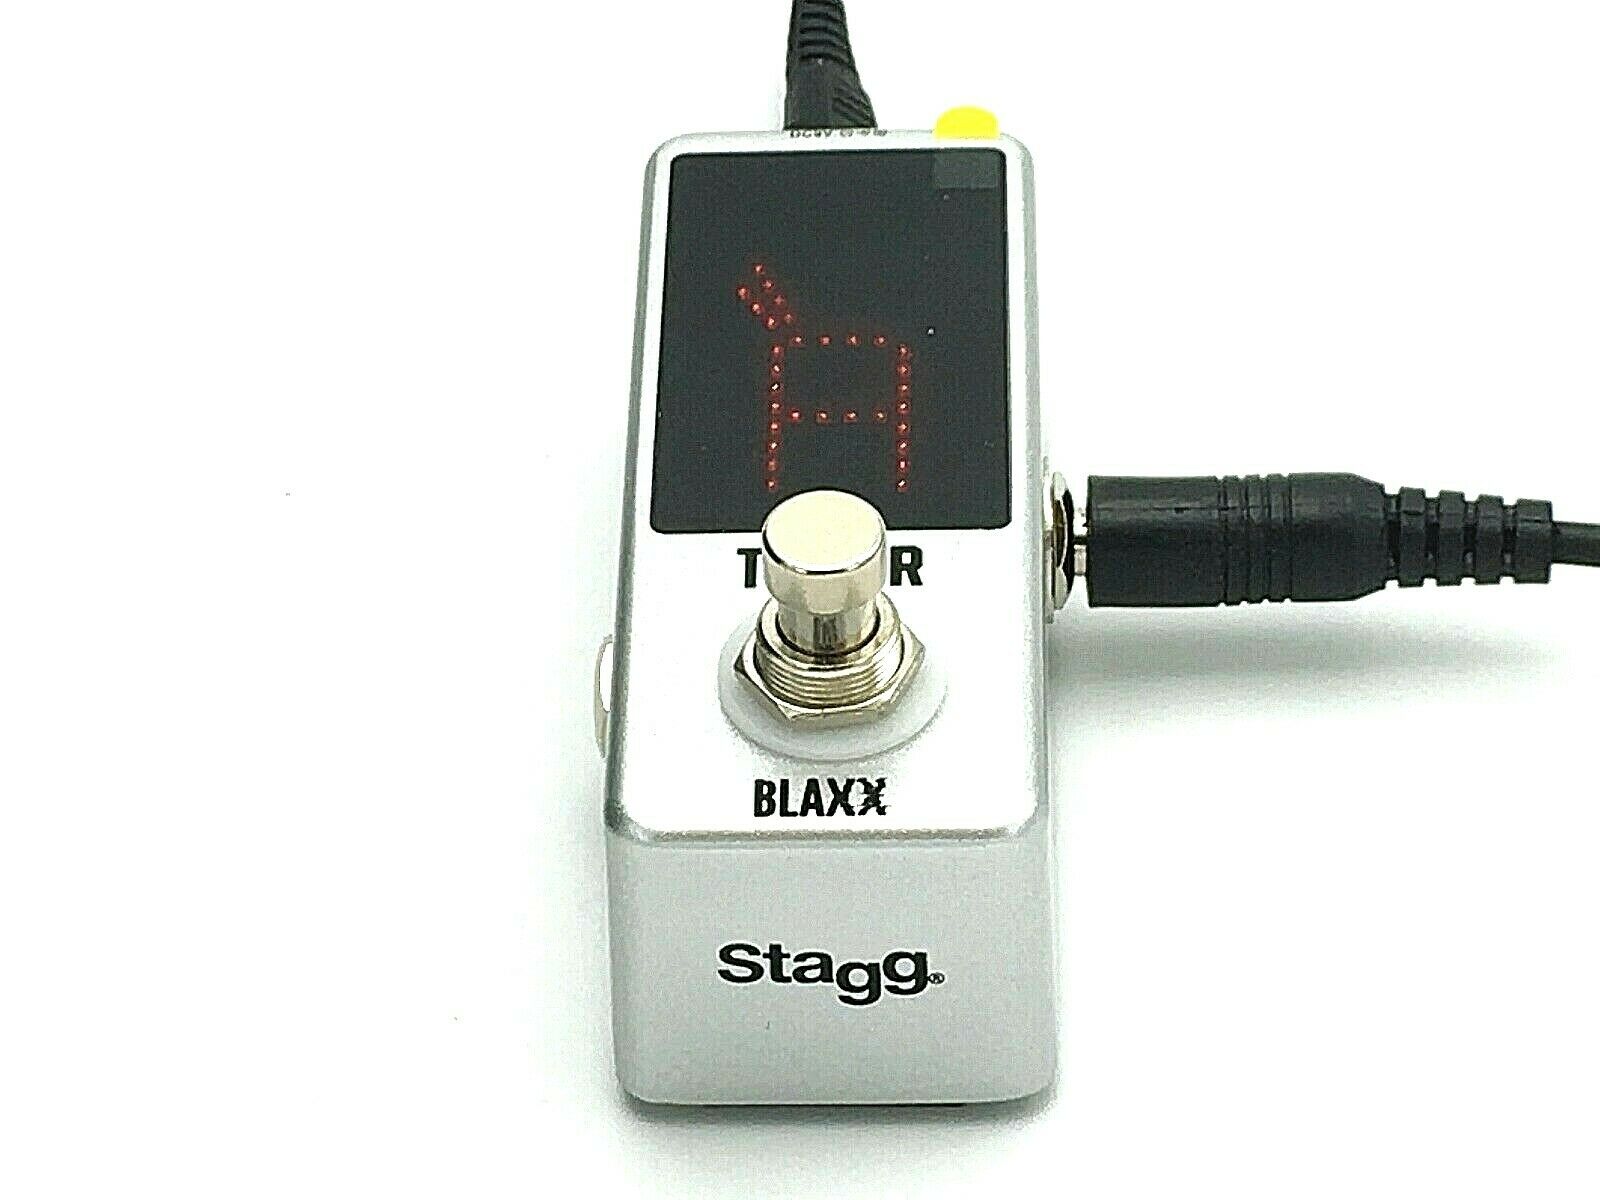 Stagg • BLAXX • BX Tuner • Stimmgerät • Bodenpedal